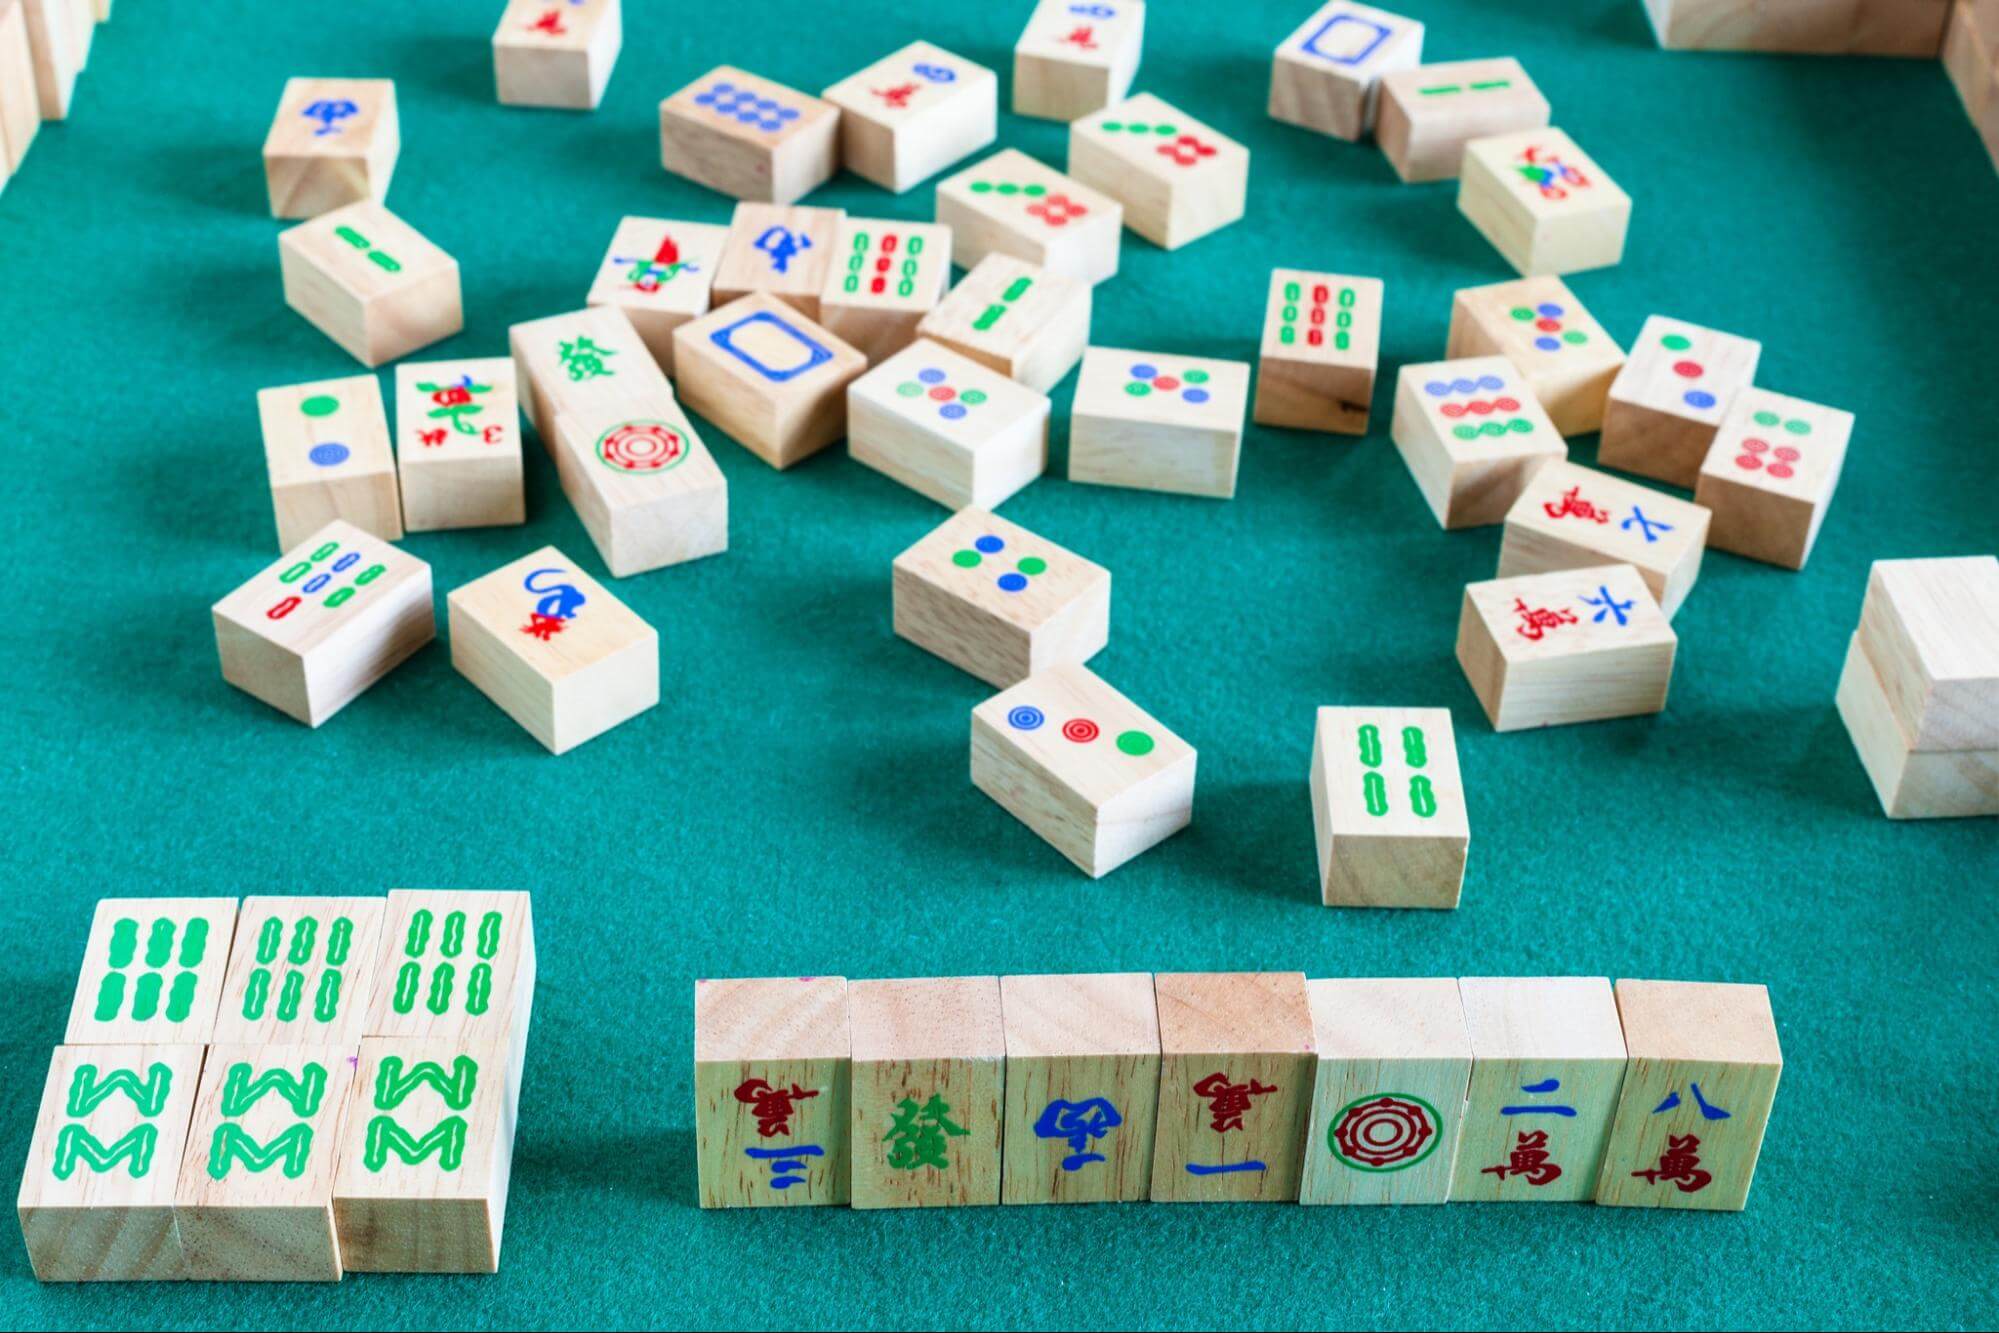 Jogos Mahjong - Jogue os jogos mais populares